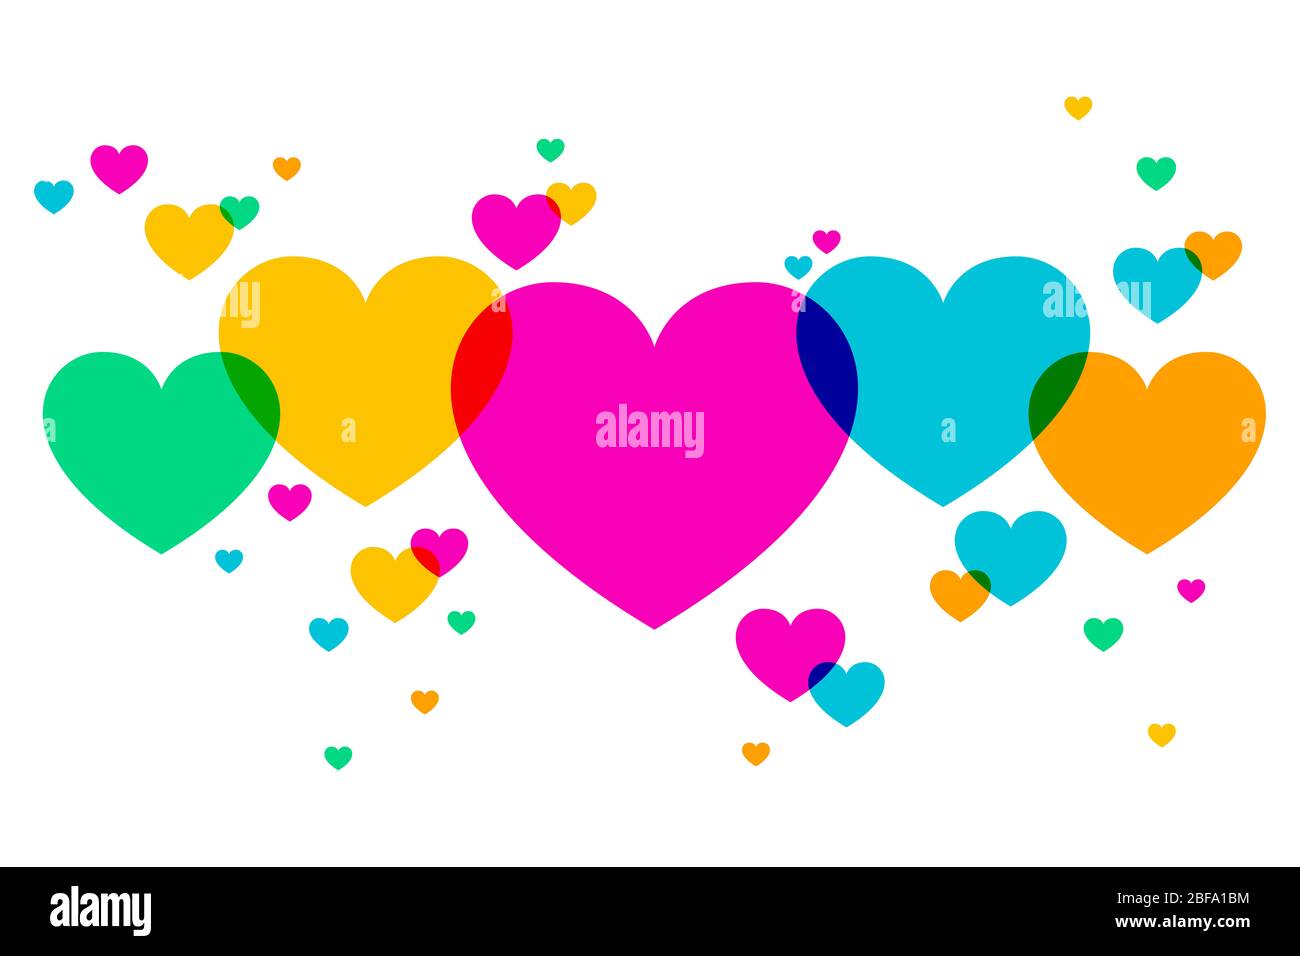 Arrière-plan constitué de formes cardiaques multicolores se chevauchant. Symboles cardiaques placés de manière aléatoire pour exprimer des émotions telles que l'amour romantique ou la joie. Illustration Banque D'Images